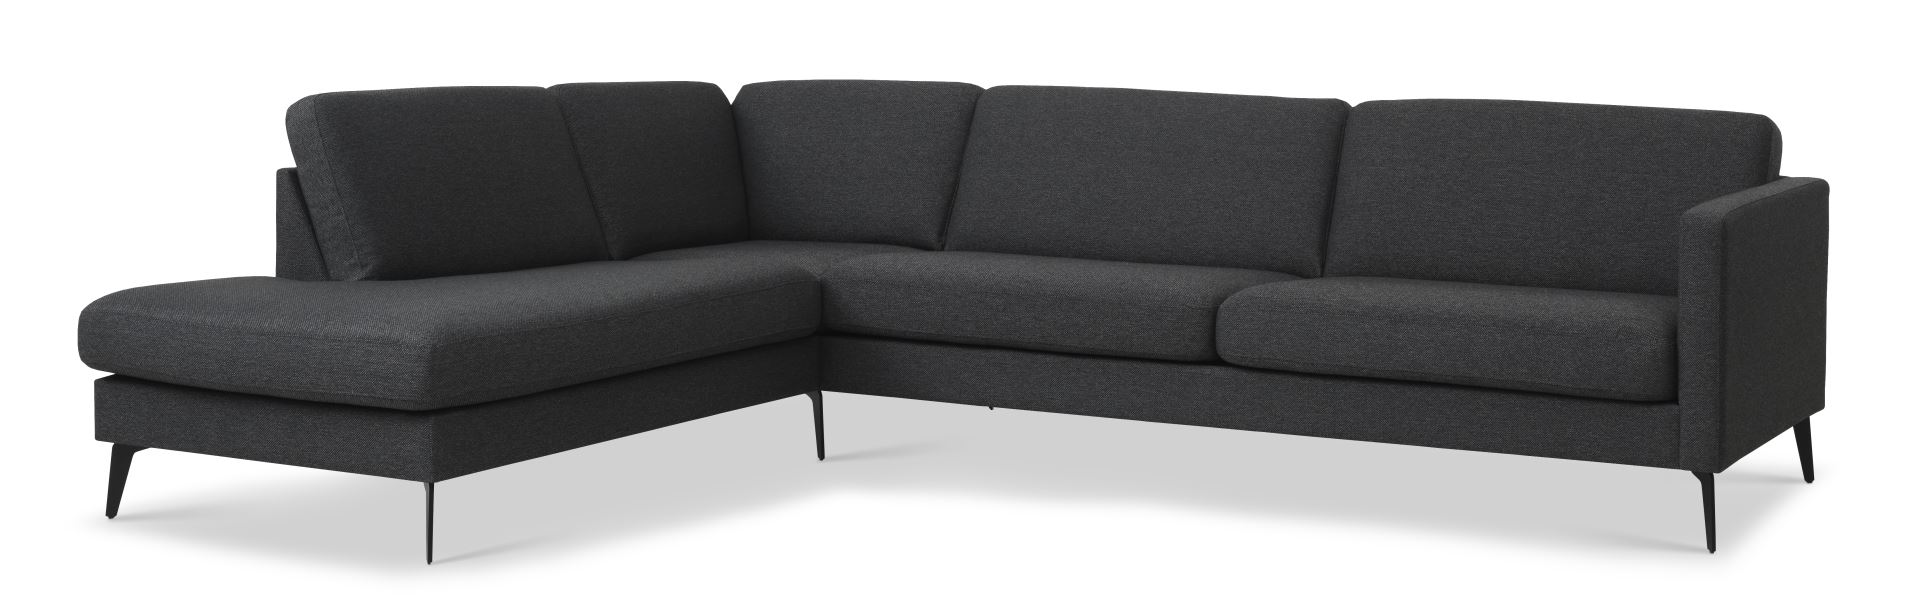 Ask sæt 60 stor OE sofa, m. venstre chaiselong - antracitgrå polyester stof og Eiffel ben